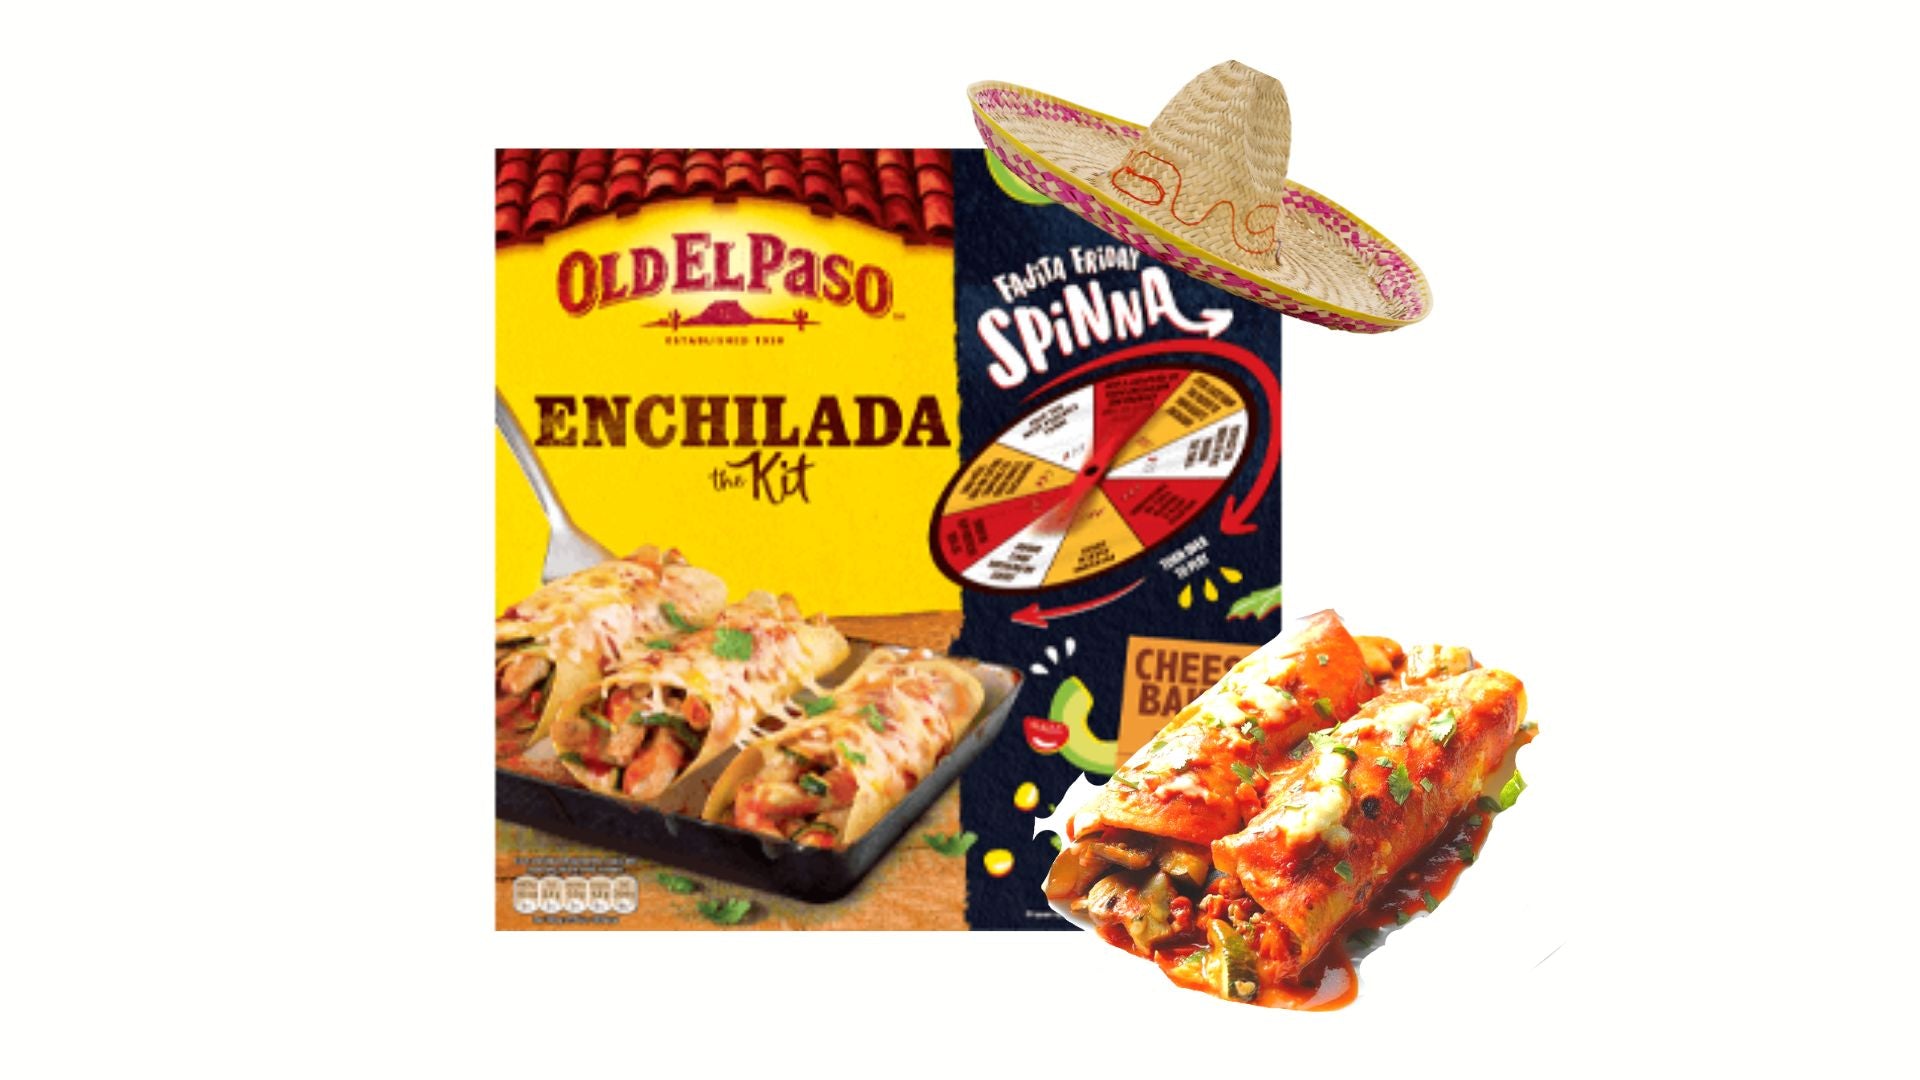 Old El Paso Kit pour Enchiladas au four 